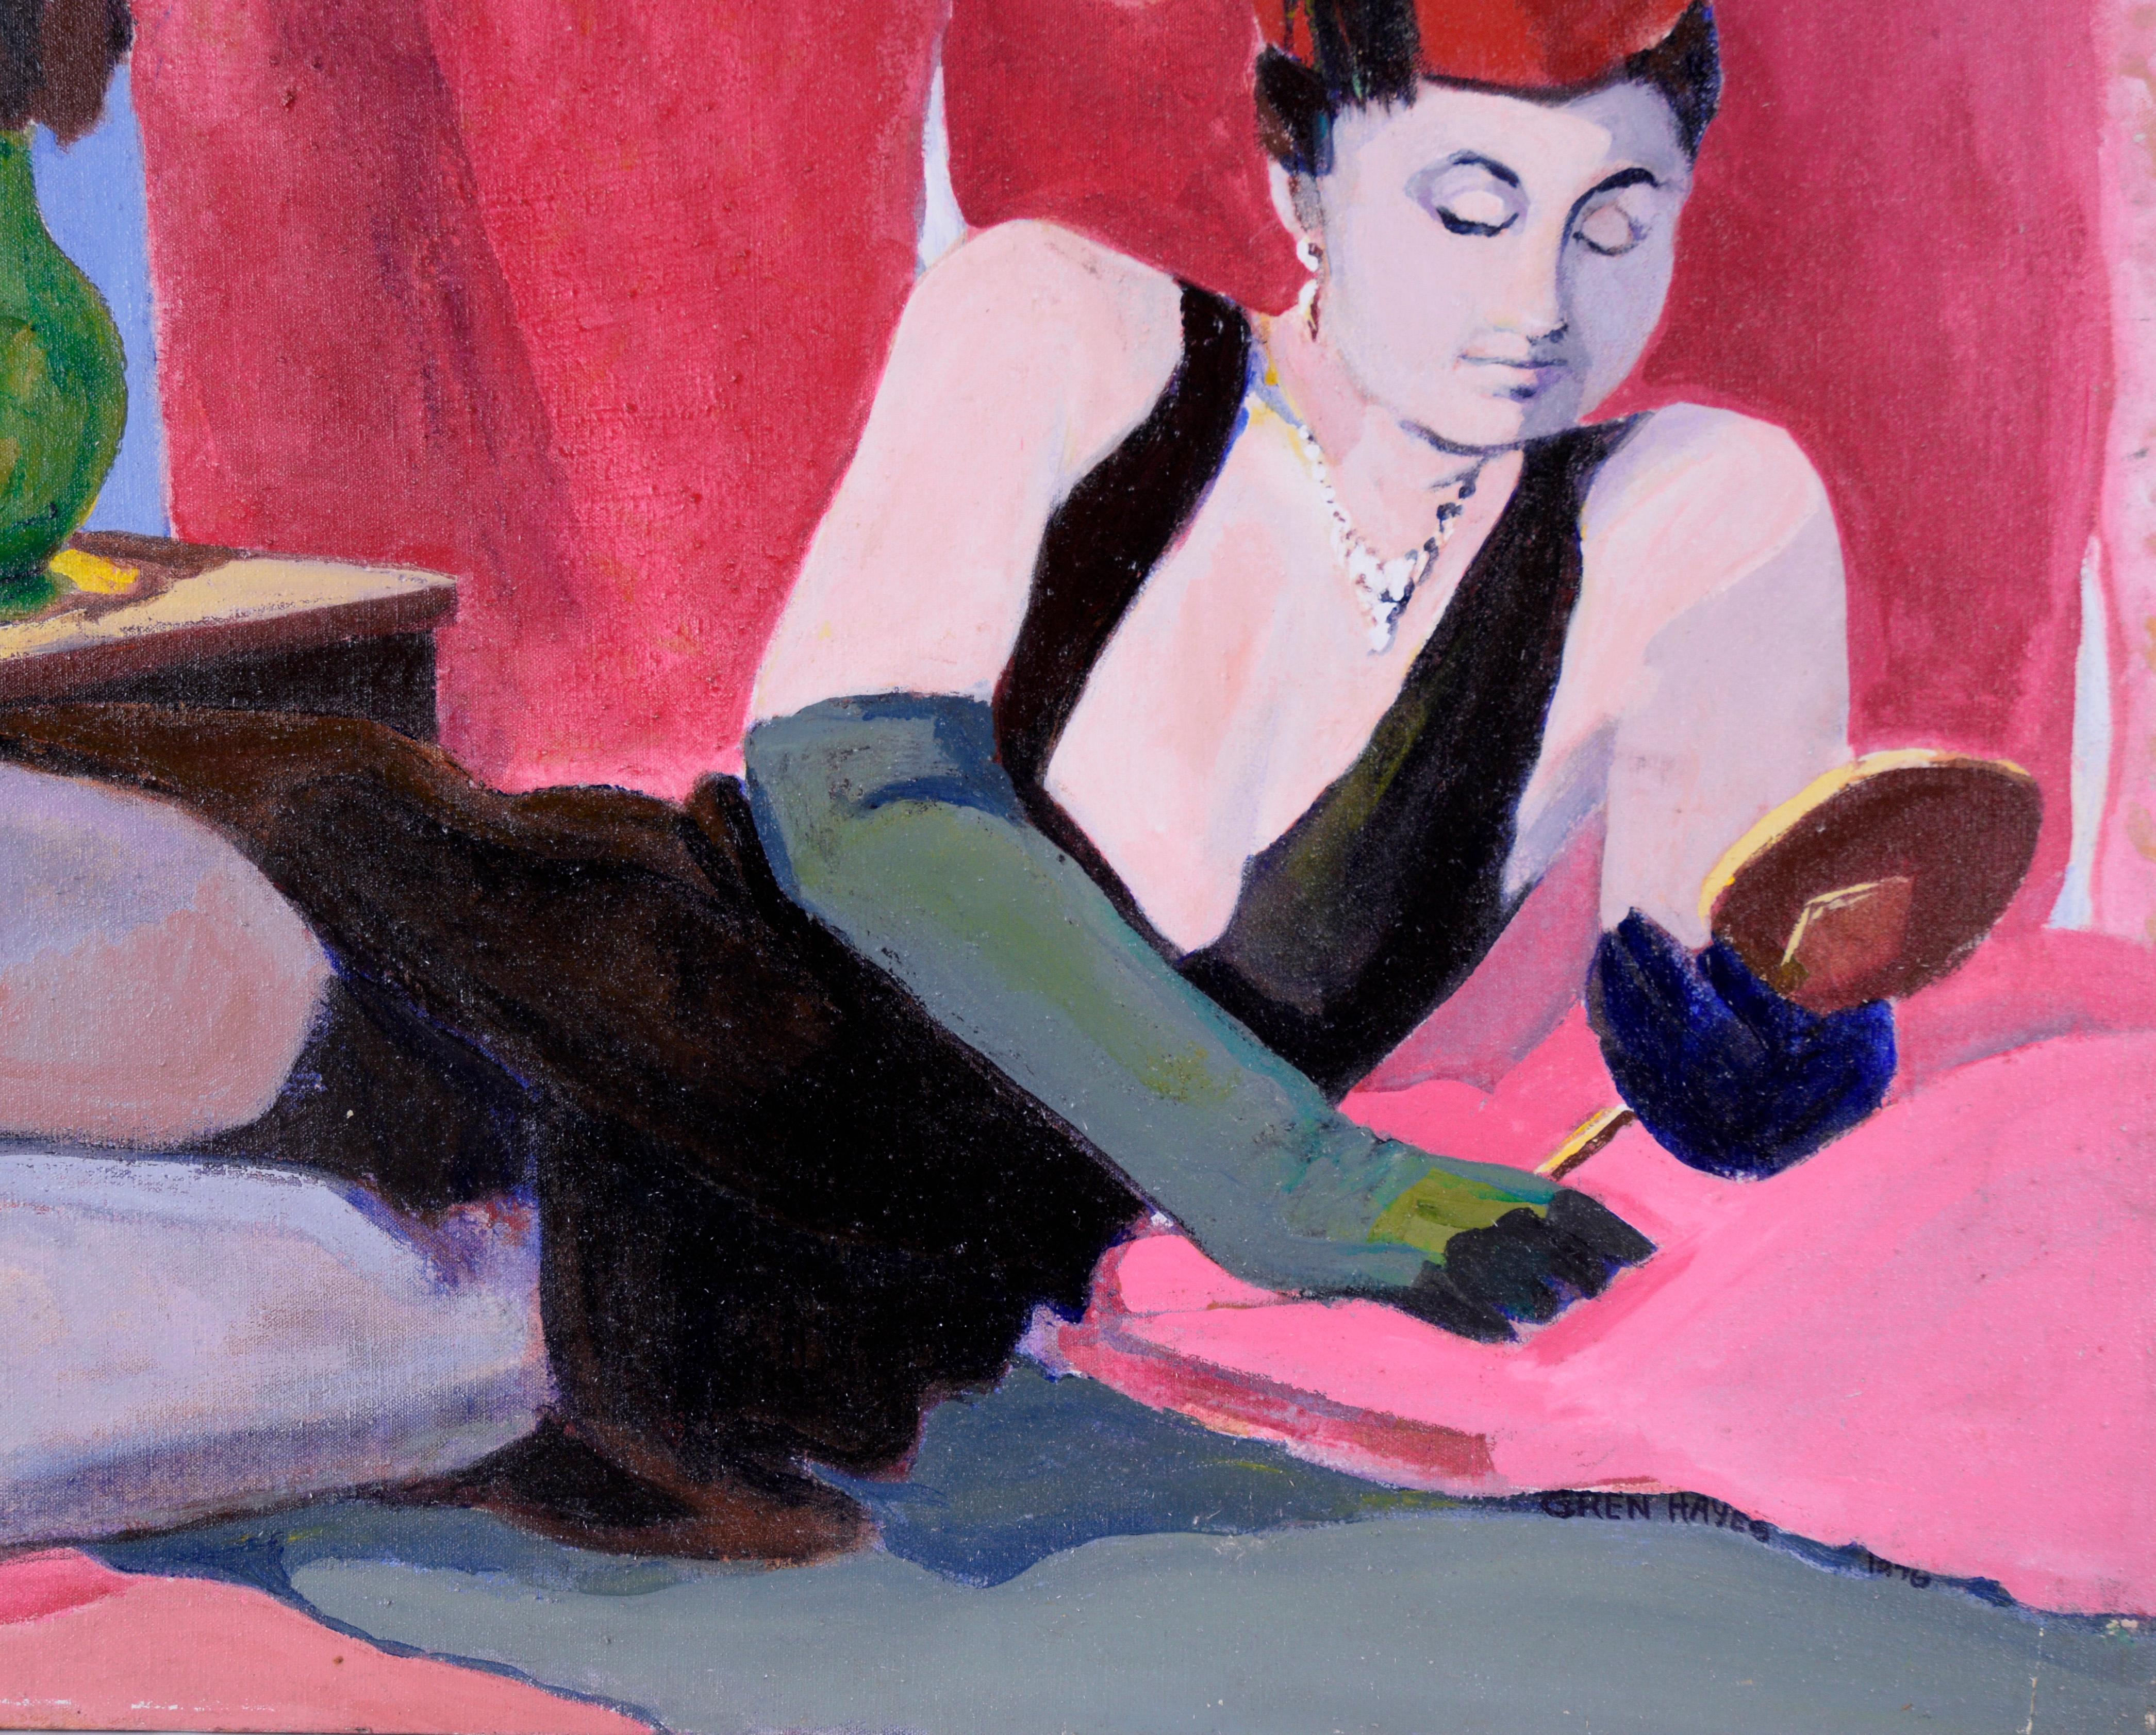 Frau mit rotem Hut – Figurative Studie, Öl auf Leinwand

Das Gemälde einer liegenden Figur der amerikanischen Malerin Patricia Gren Hayes (geb. 1932) zeigt eine Person in einem schwarzen Kleid und einem russischen Fez-Hut mit langen Handschuhen, die